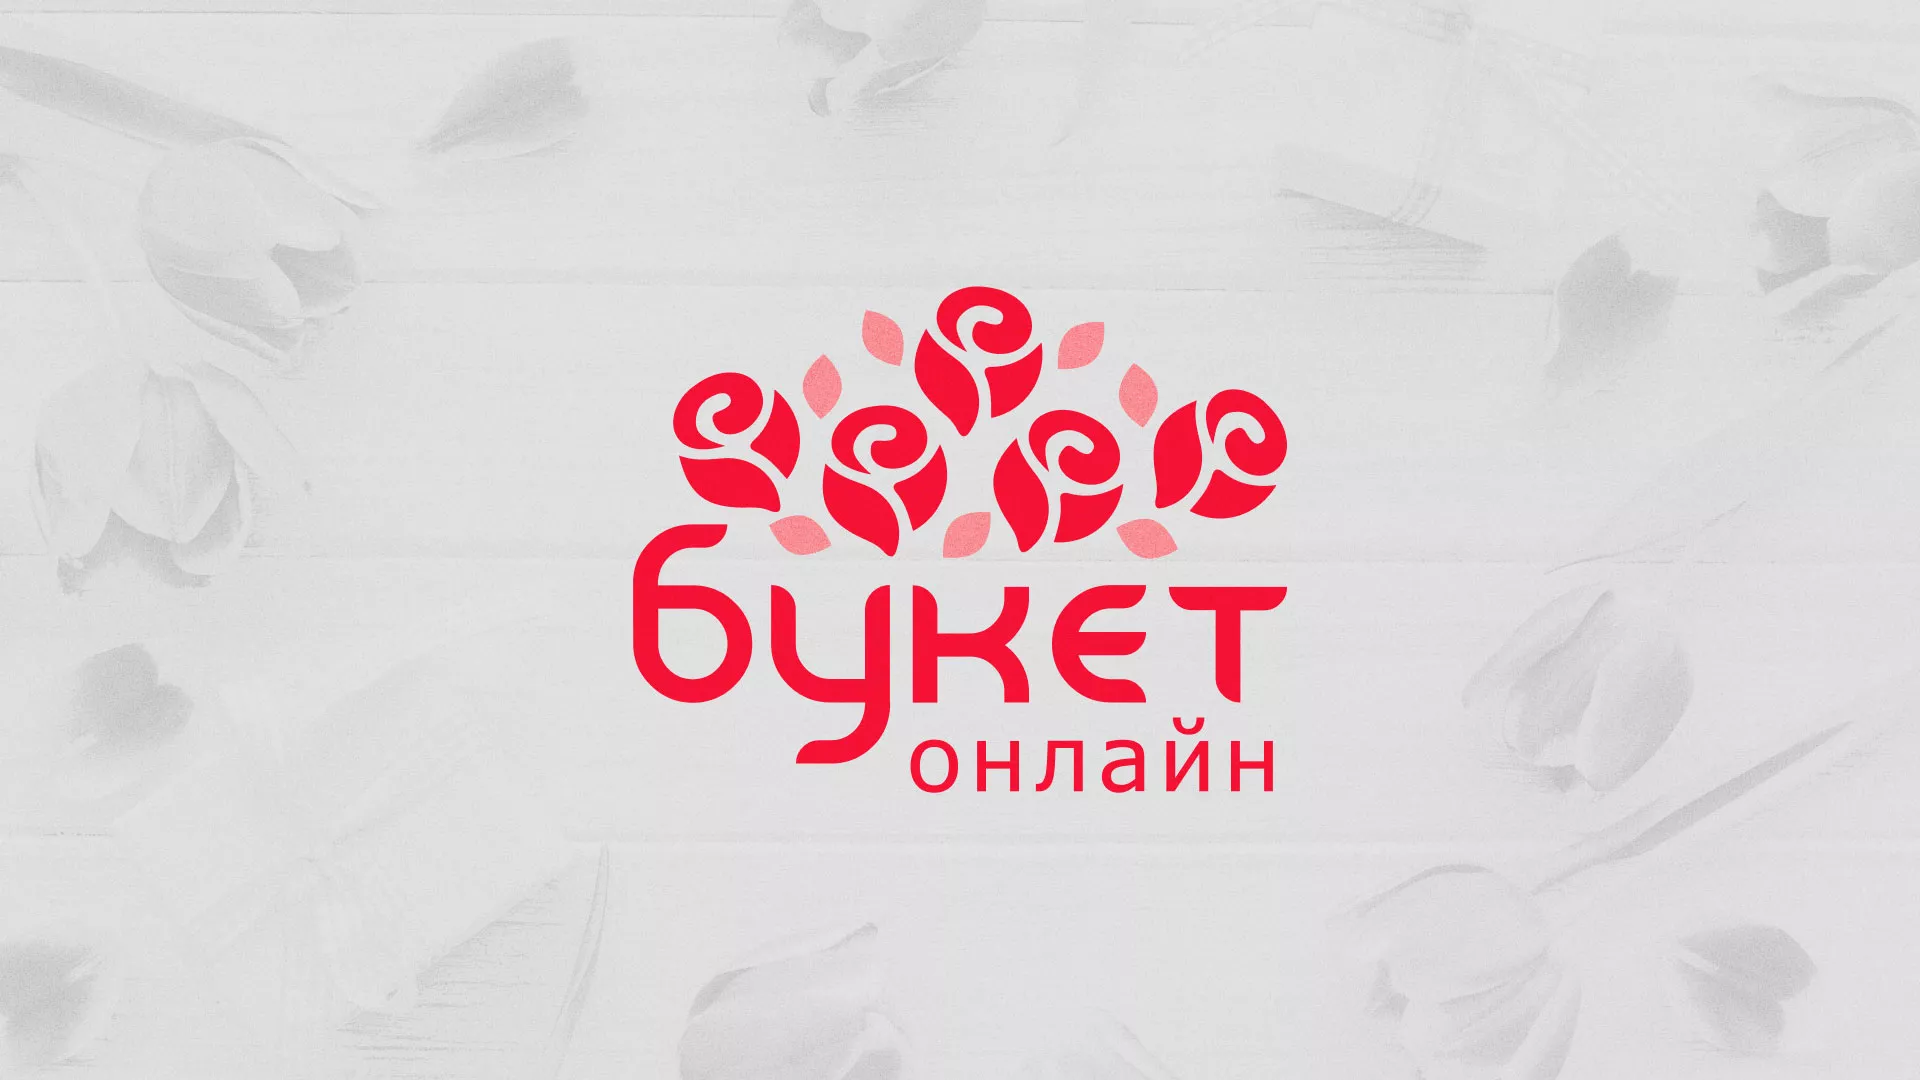 Создание интернет-магазина «Букет-онлайн» по цветам в Устюжне